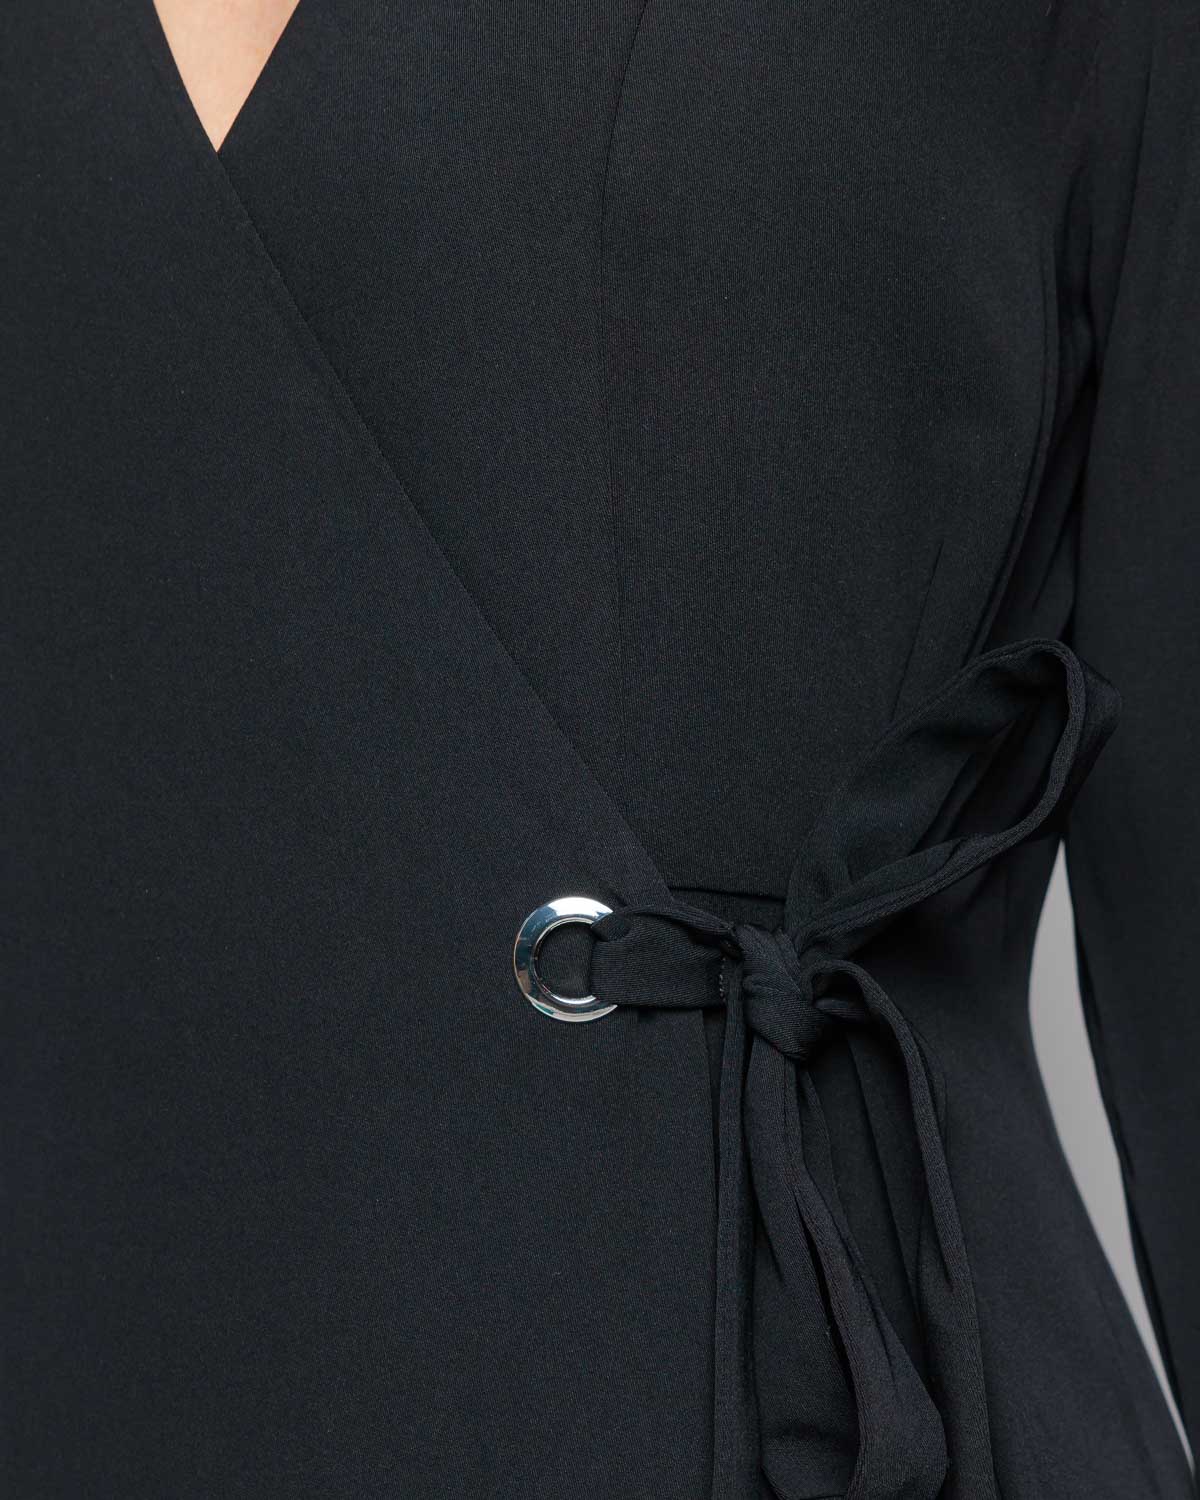 InWear Kadian Wrap Dress in Black